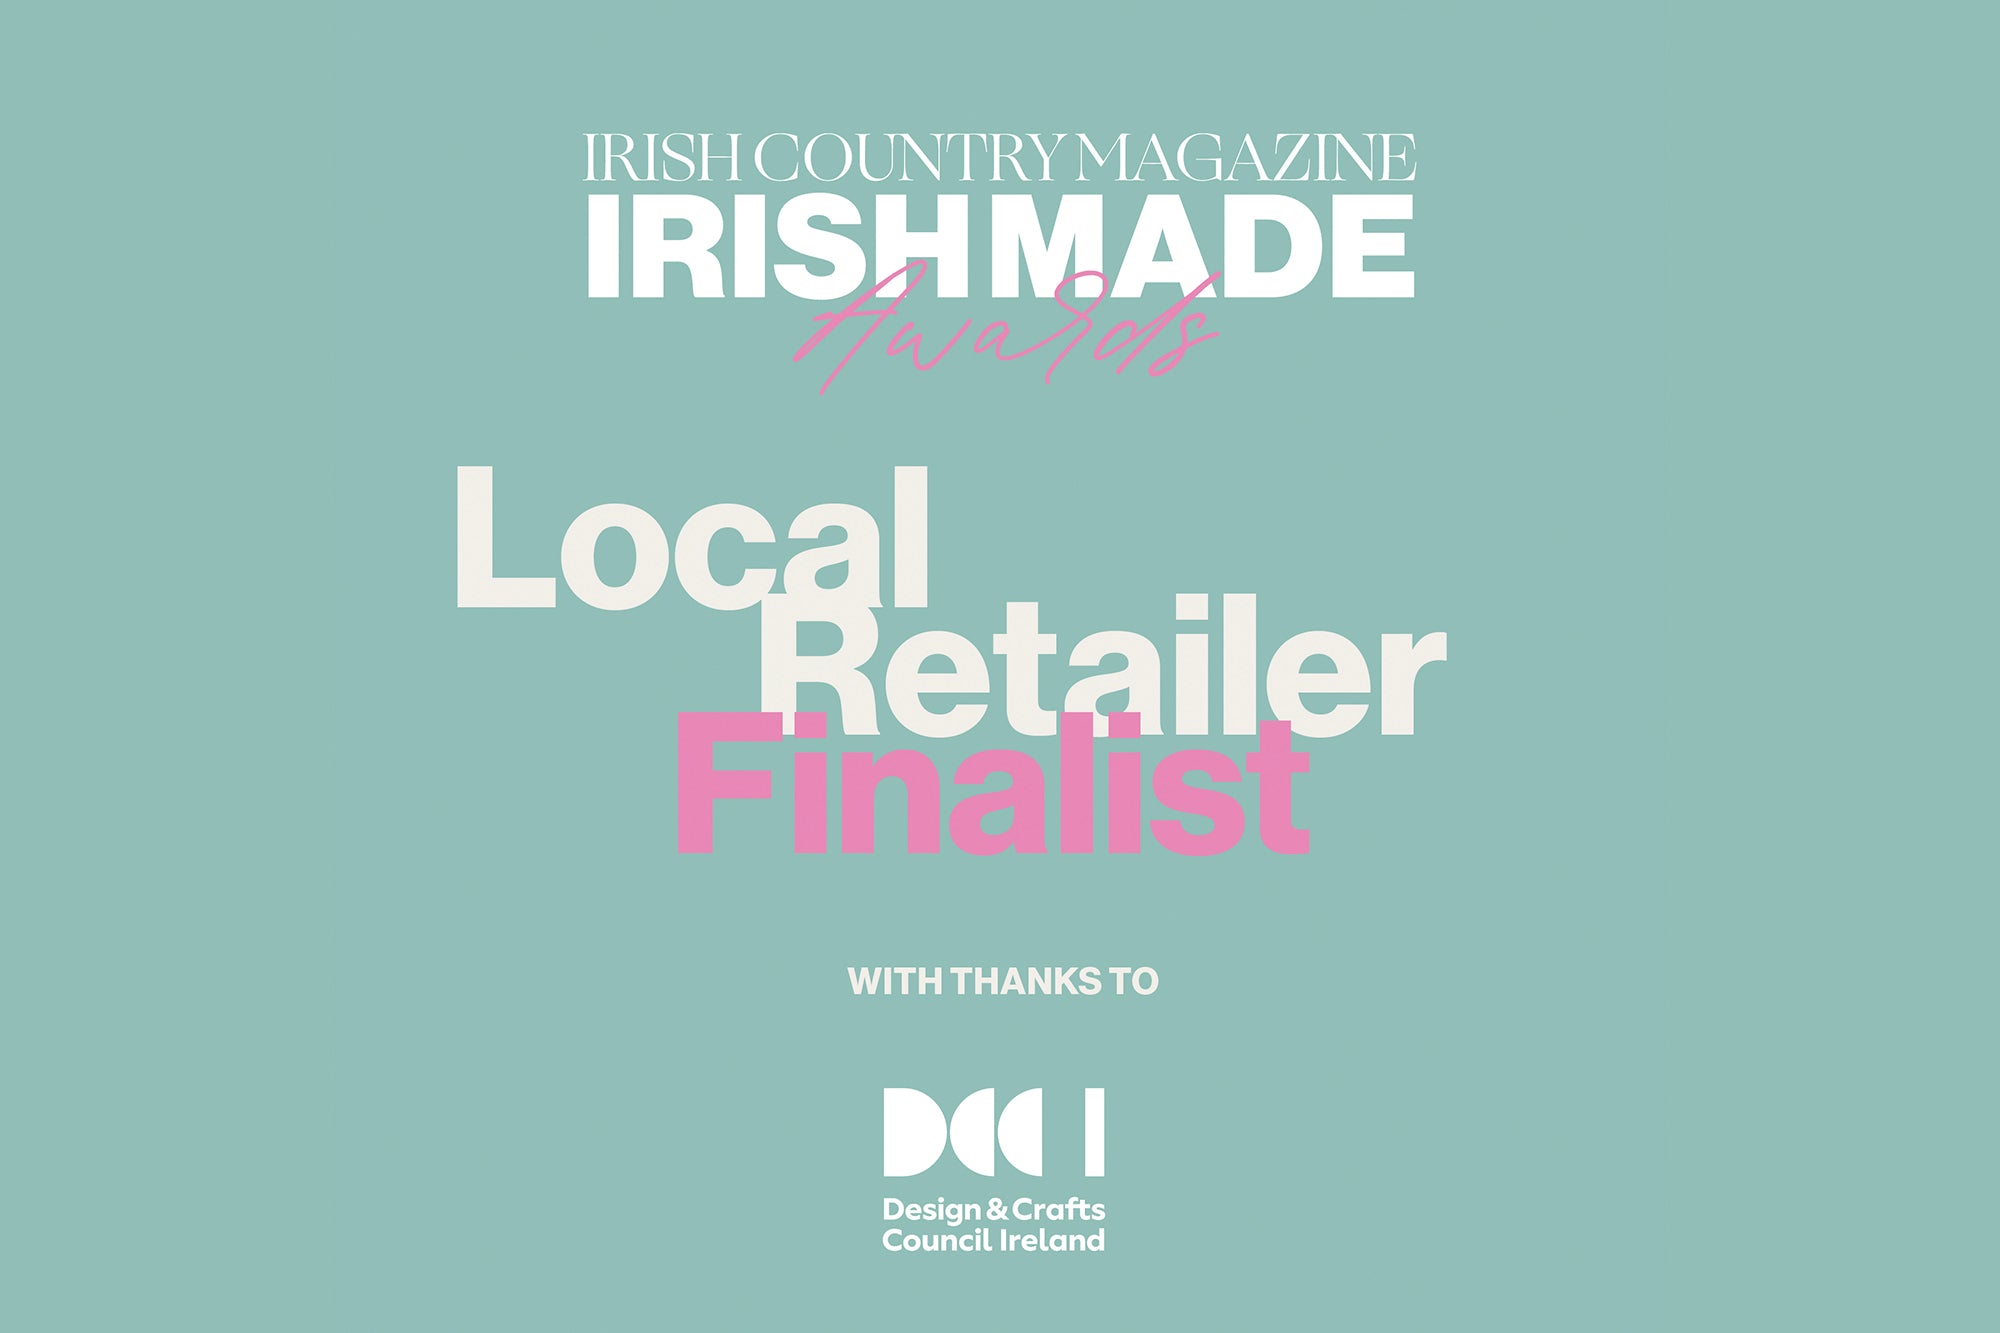 Vote for us in The Irish Country Magazine Irish Made Awards 2023!